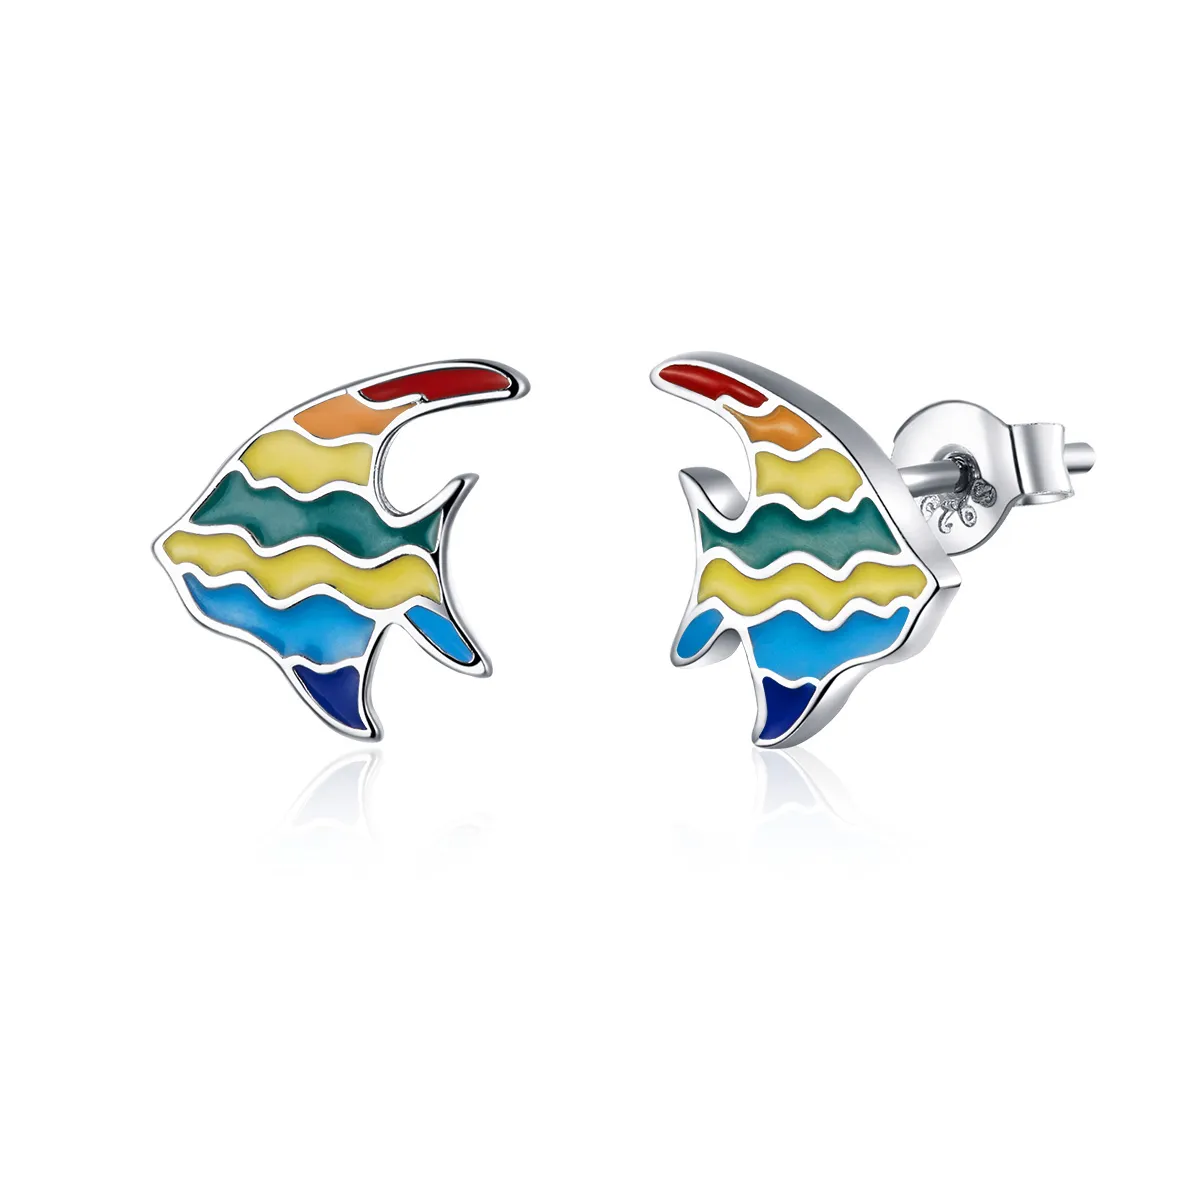 Stud earrings în stilul Pandora cu peștișor în culorile curcubeului - SCE824